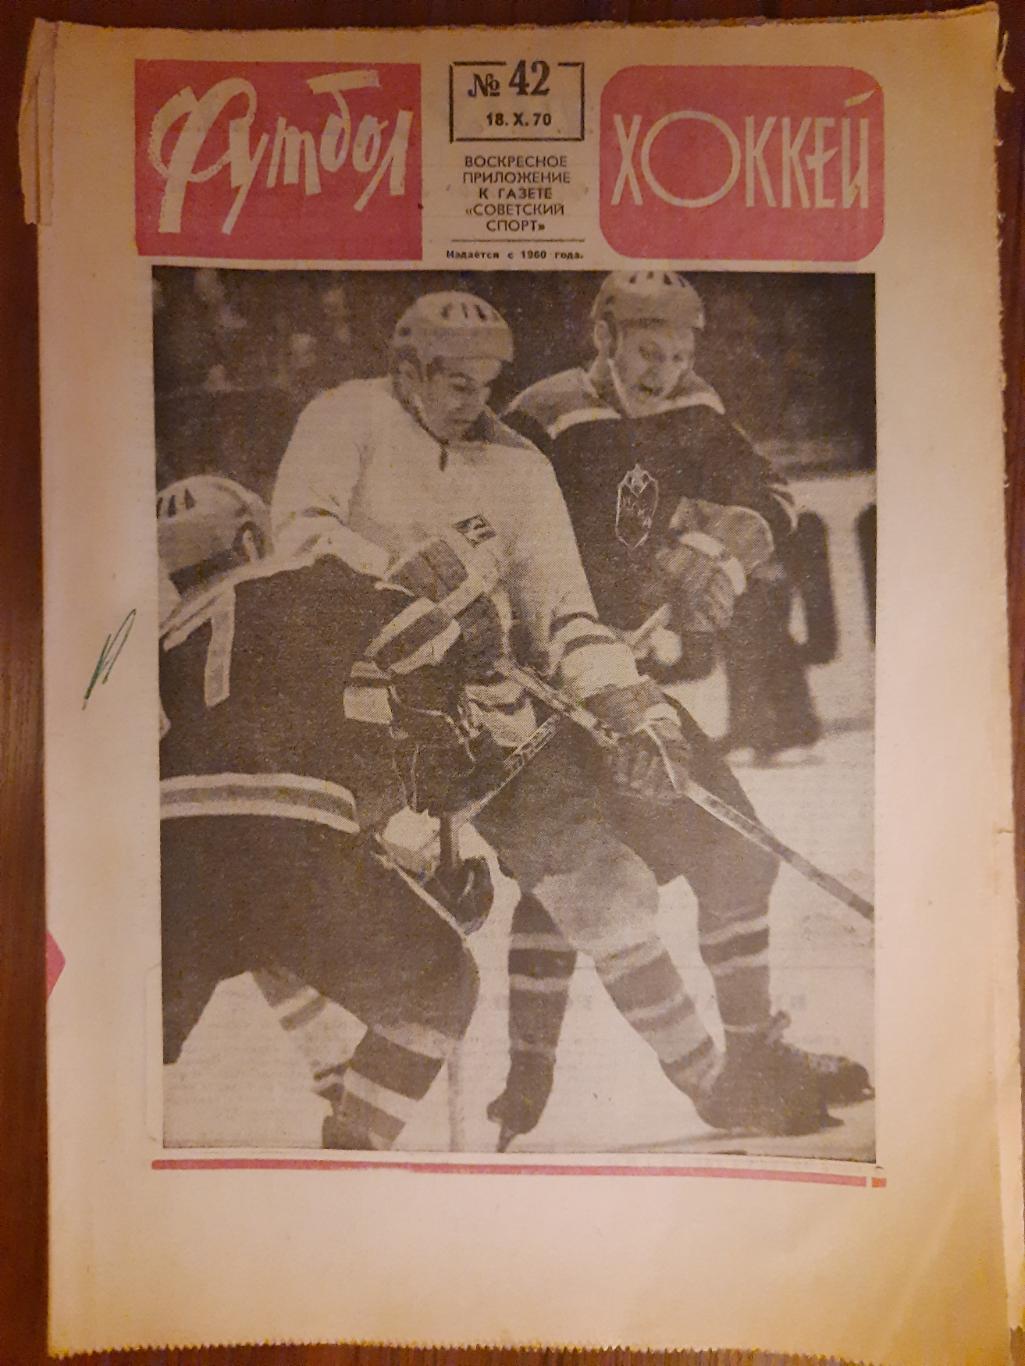 еженедельник футбол-хоккей #42,1970.